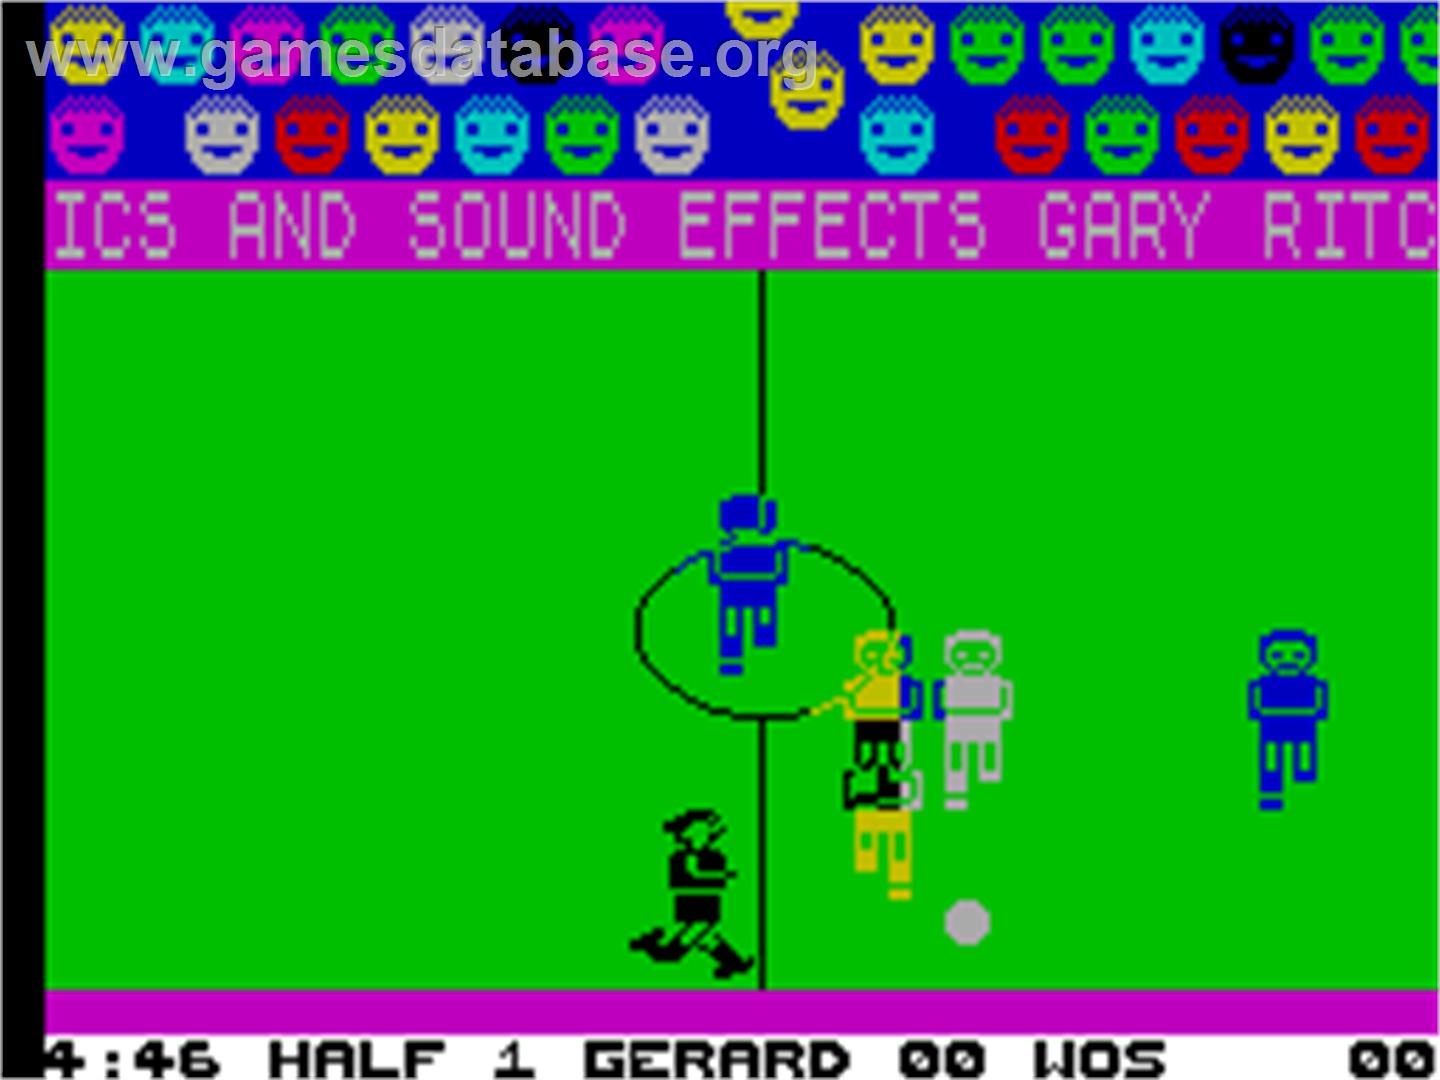 Indoor Soccer - Sinclair ZX Spectrum - Artwork - In Game